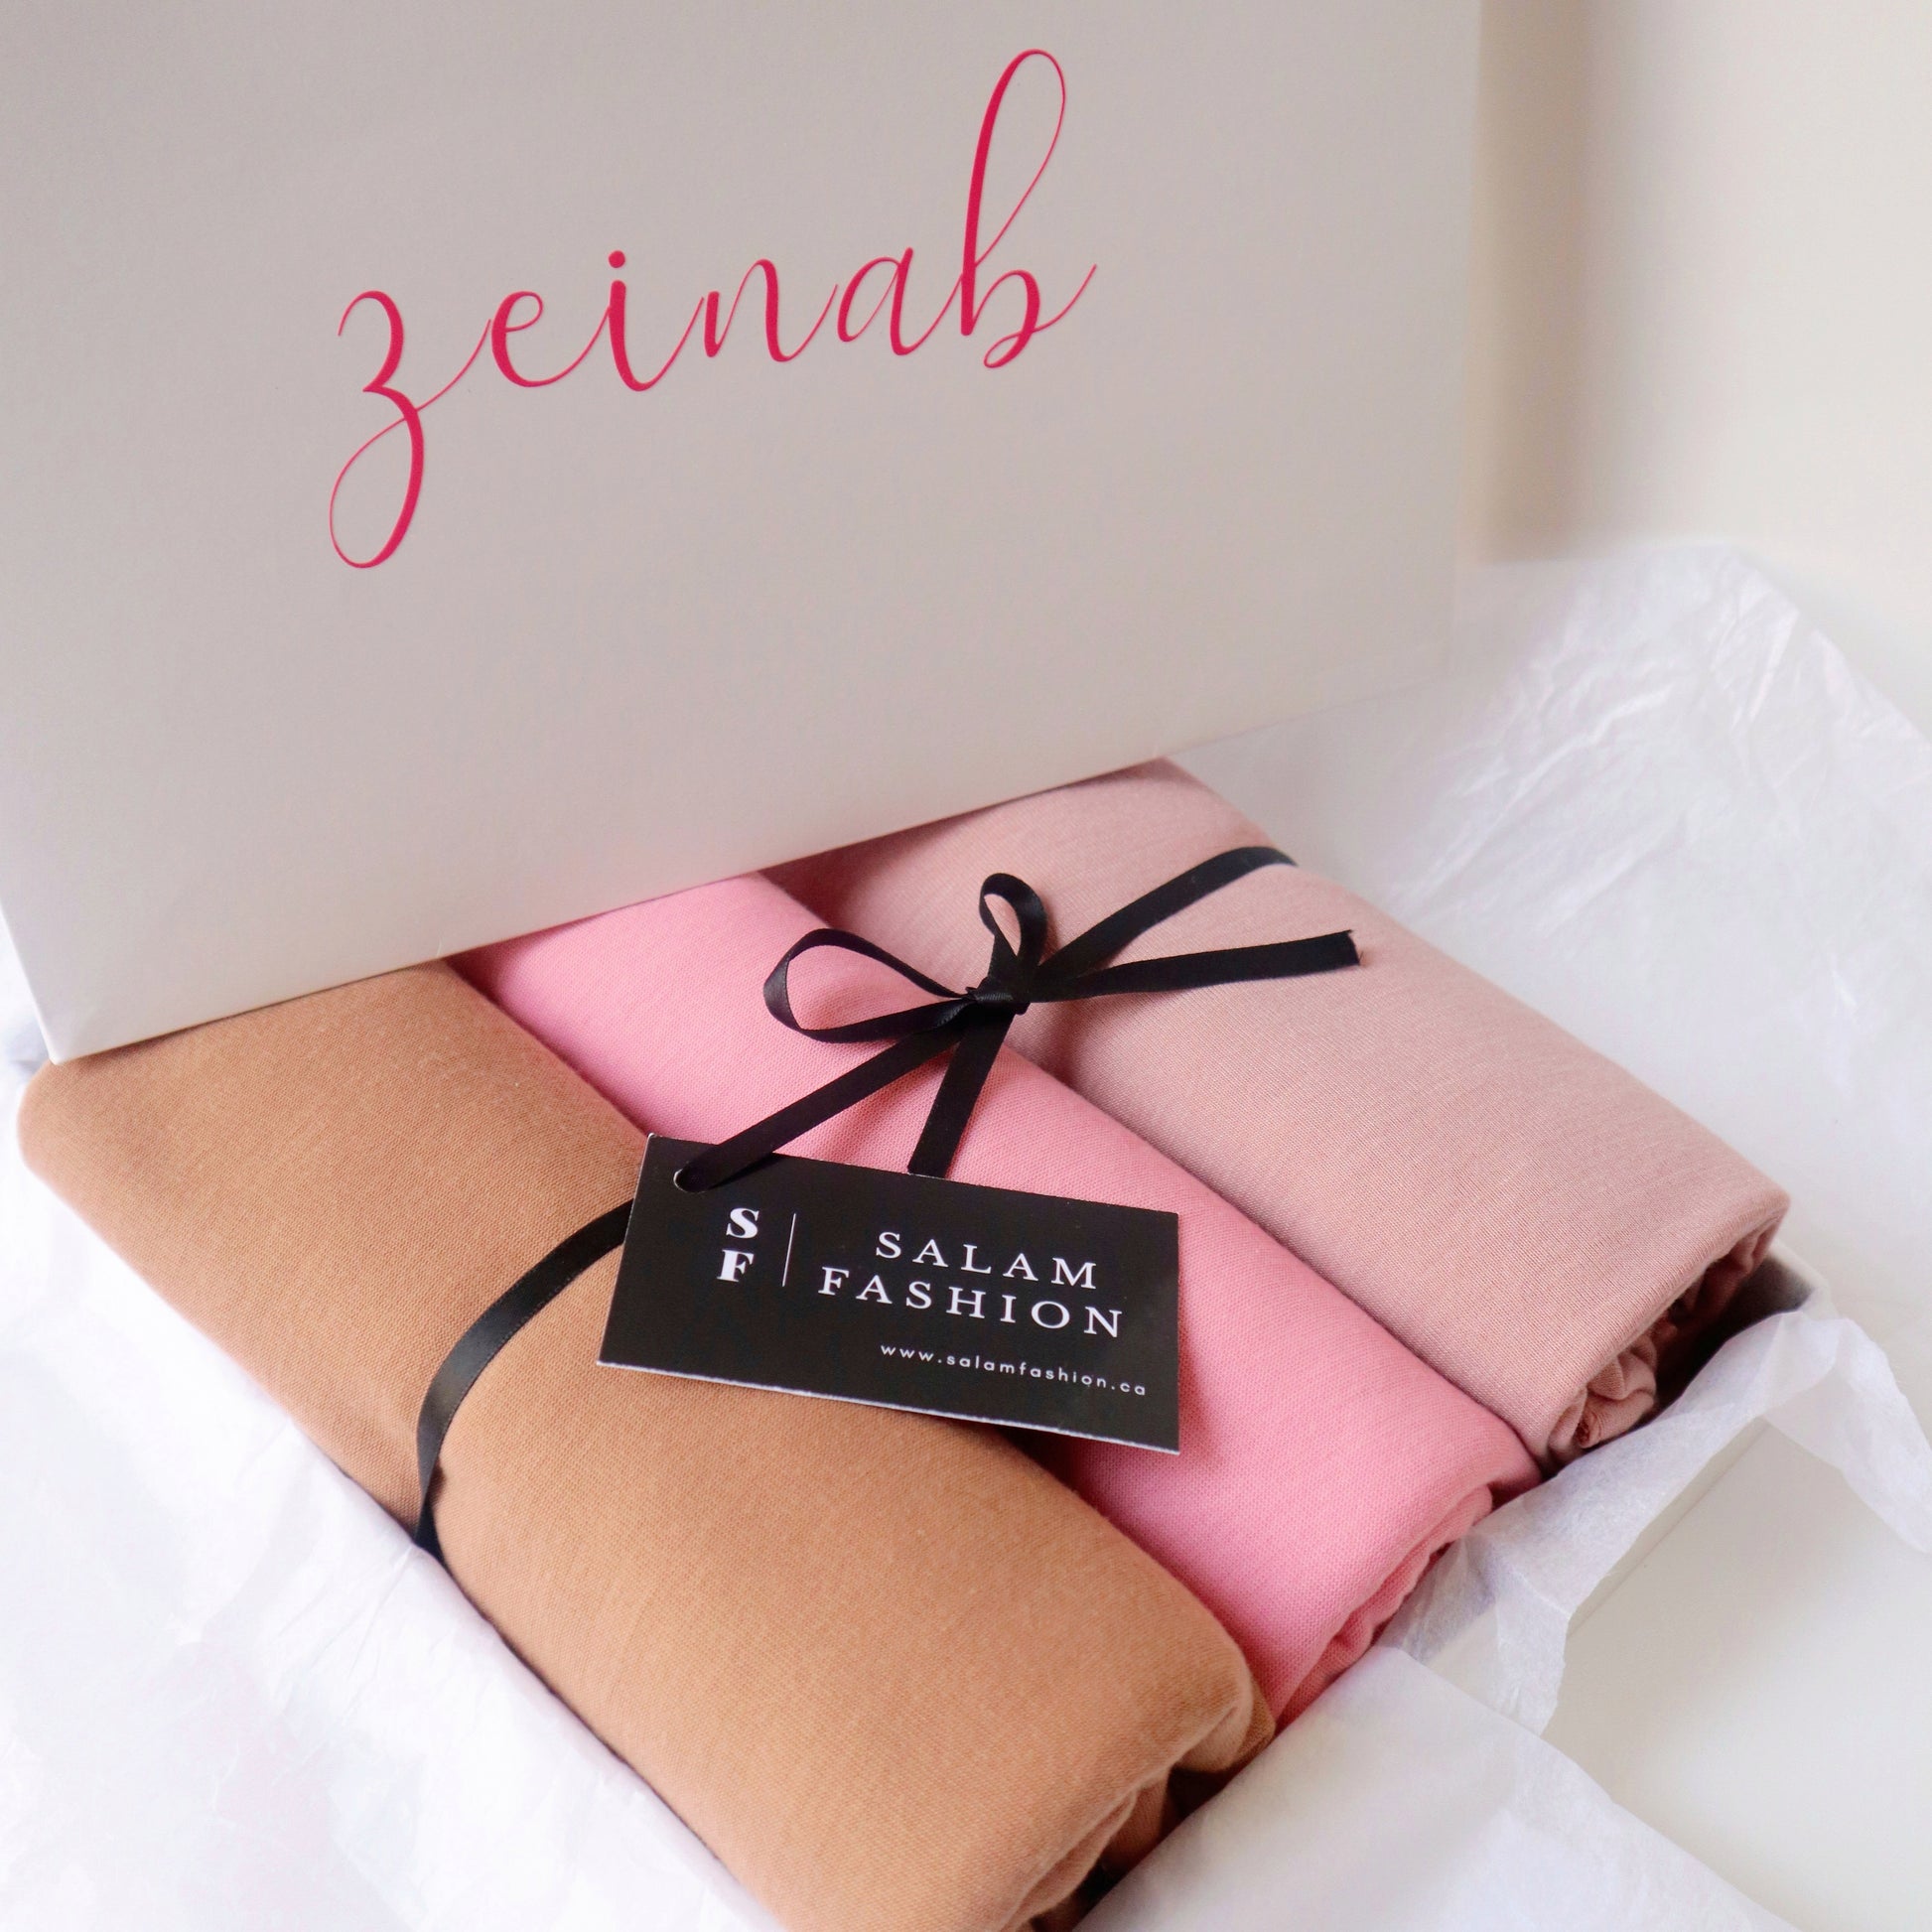 Blushing Rose Jersey Gift Box - Salam Fashion